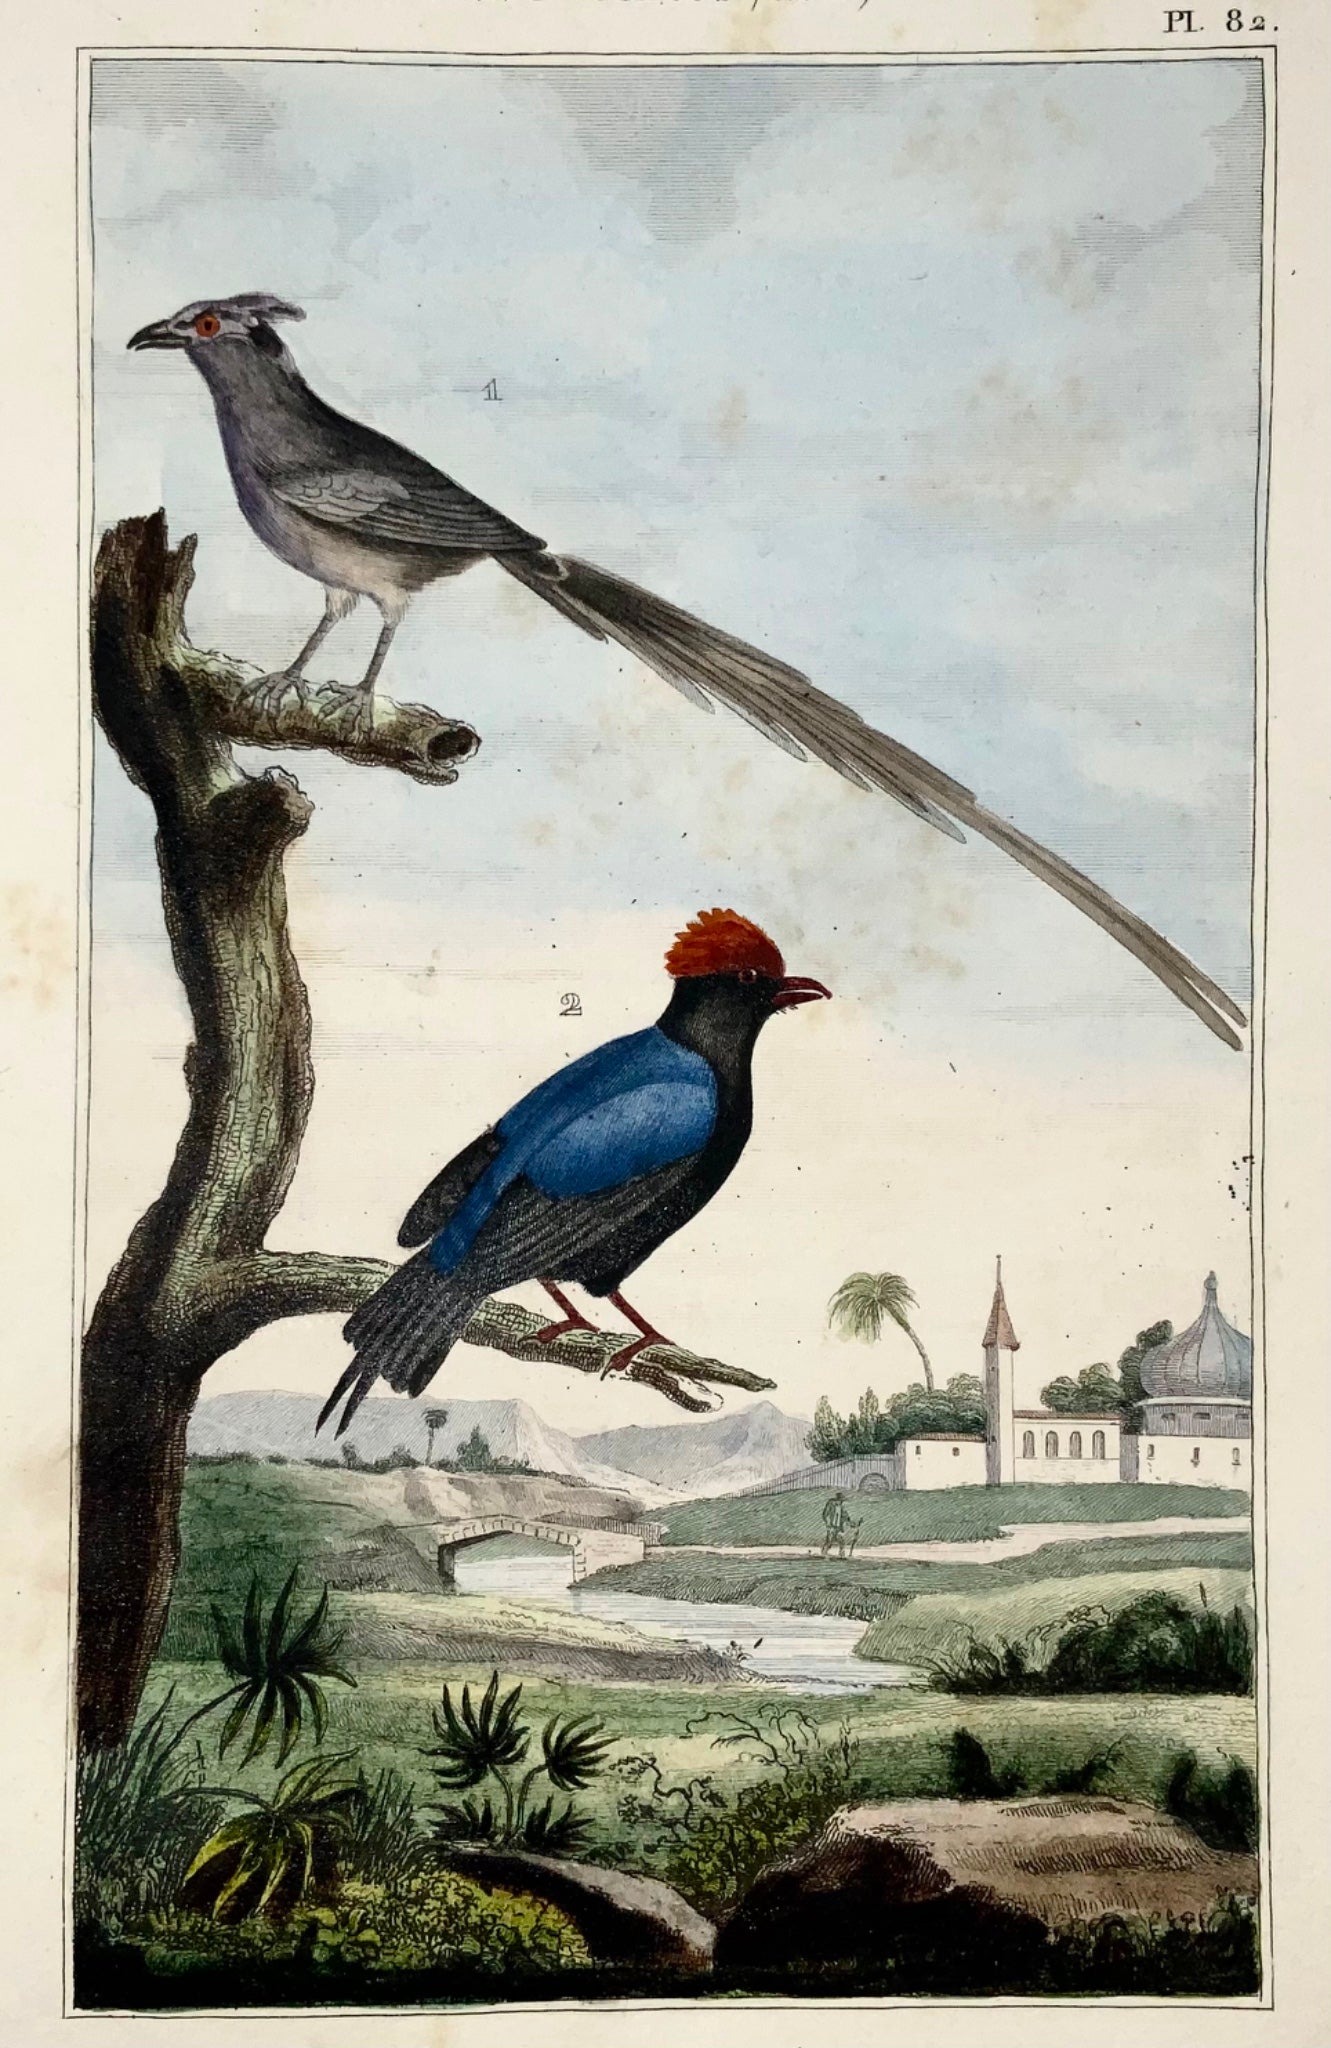 1822 Manakin, Mousebird, ornitologia, incisione, bel colore originale a mano